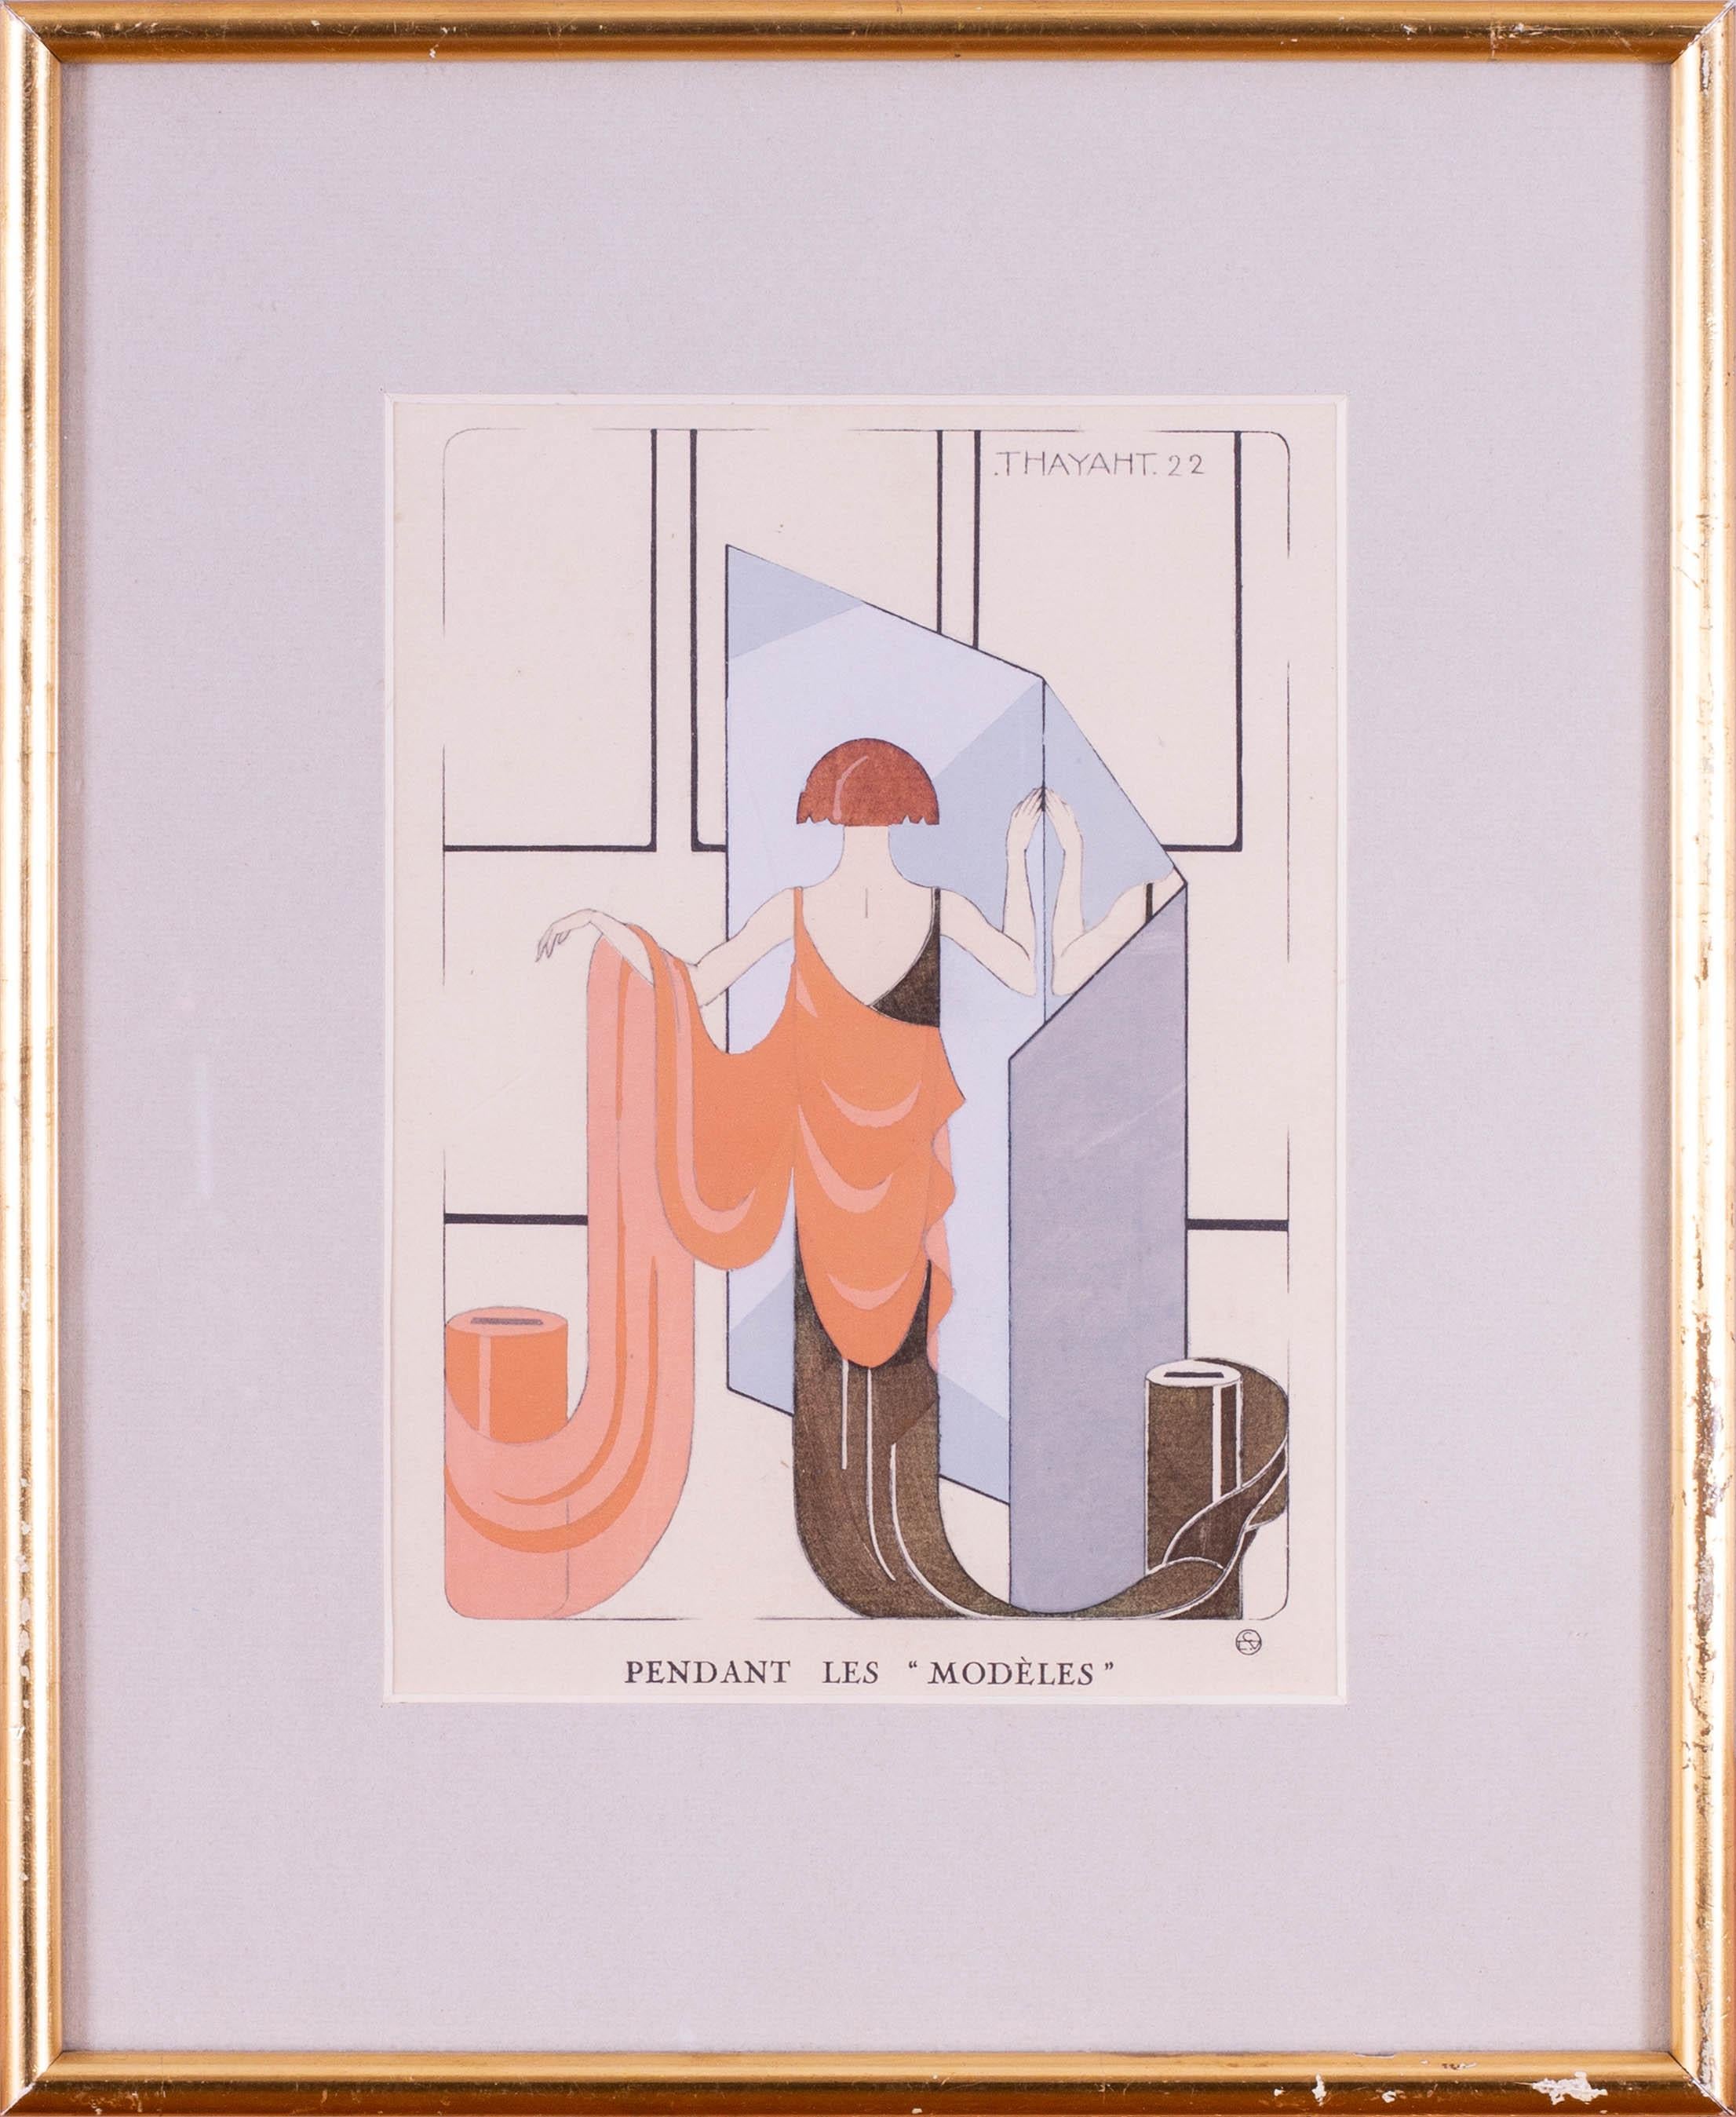 Lithographie Art déco de 1922 colorée à la main avec gouache d'une élégante dame